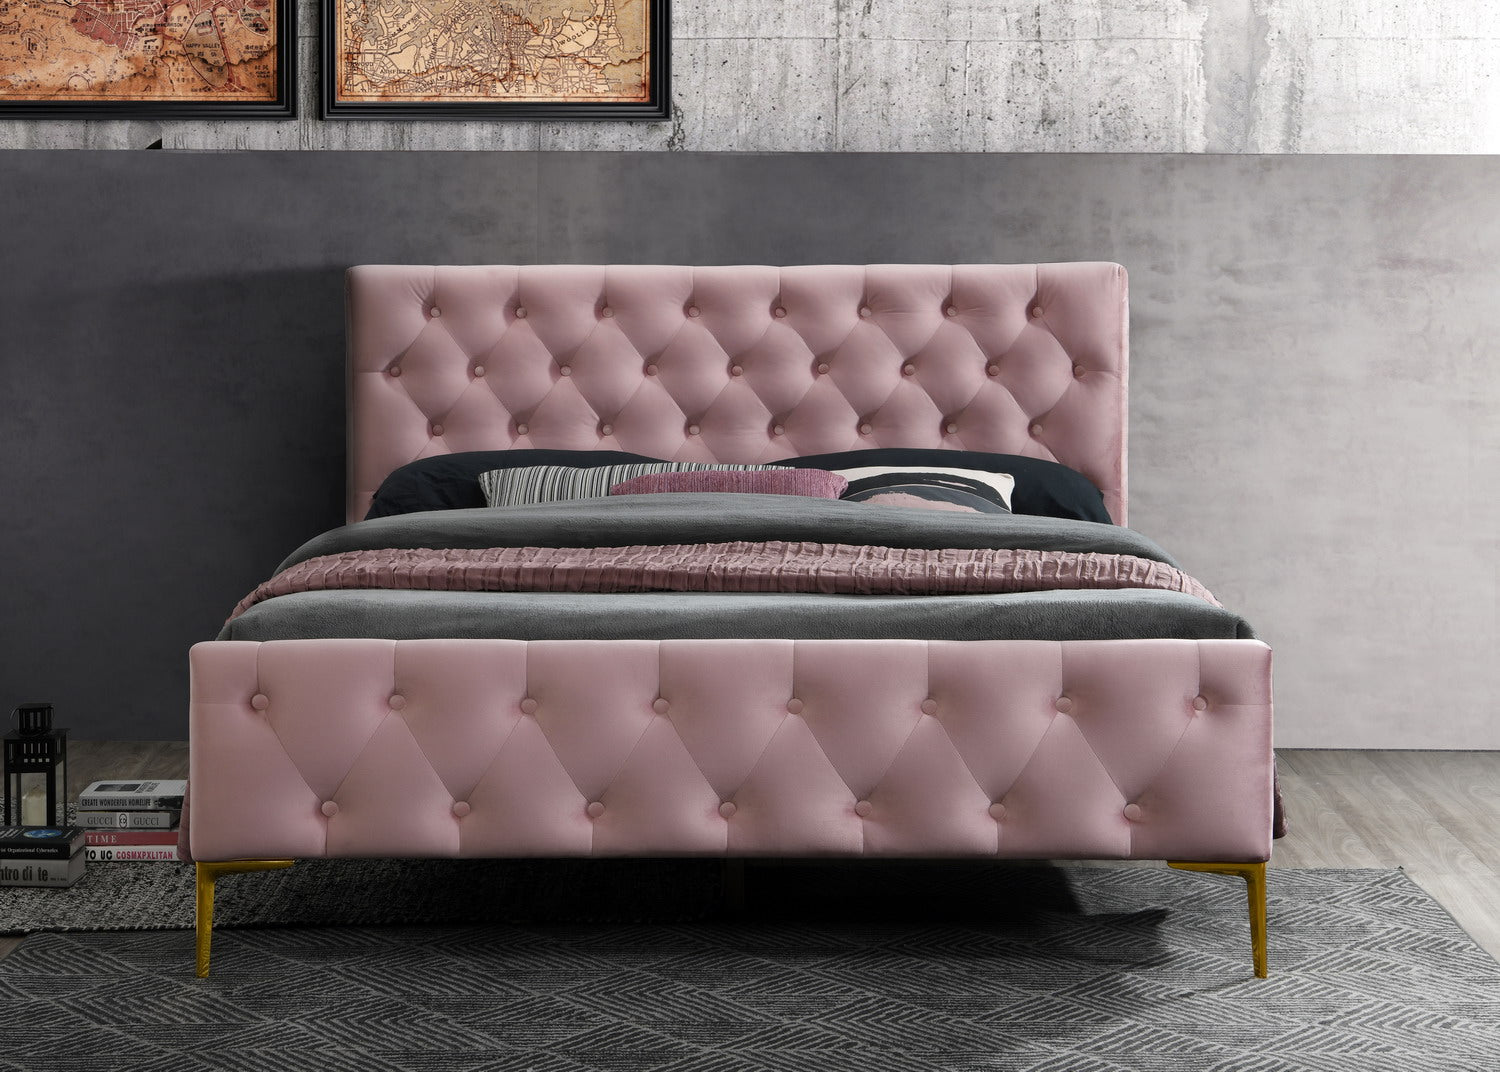 France Upholstered Platform Bed - Queen size, Blush